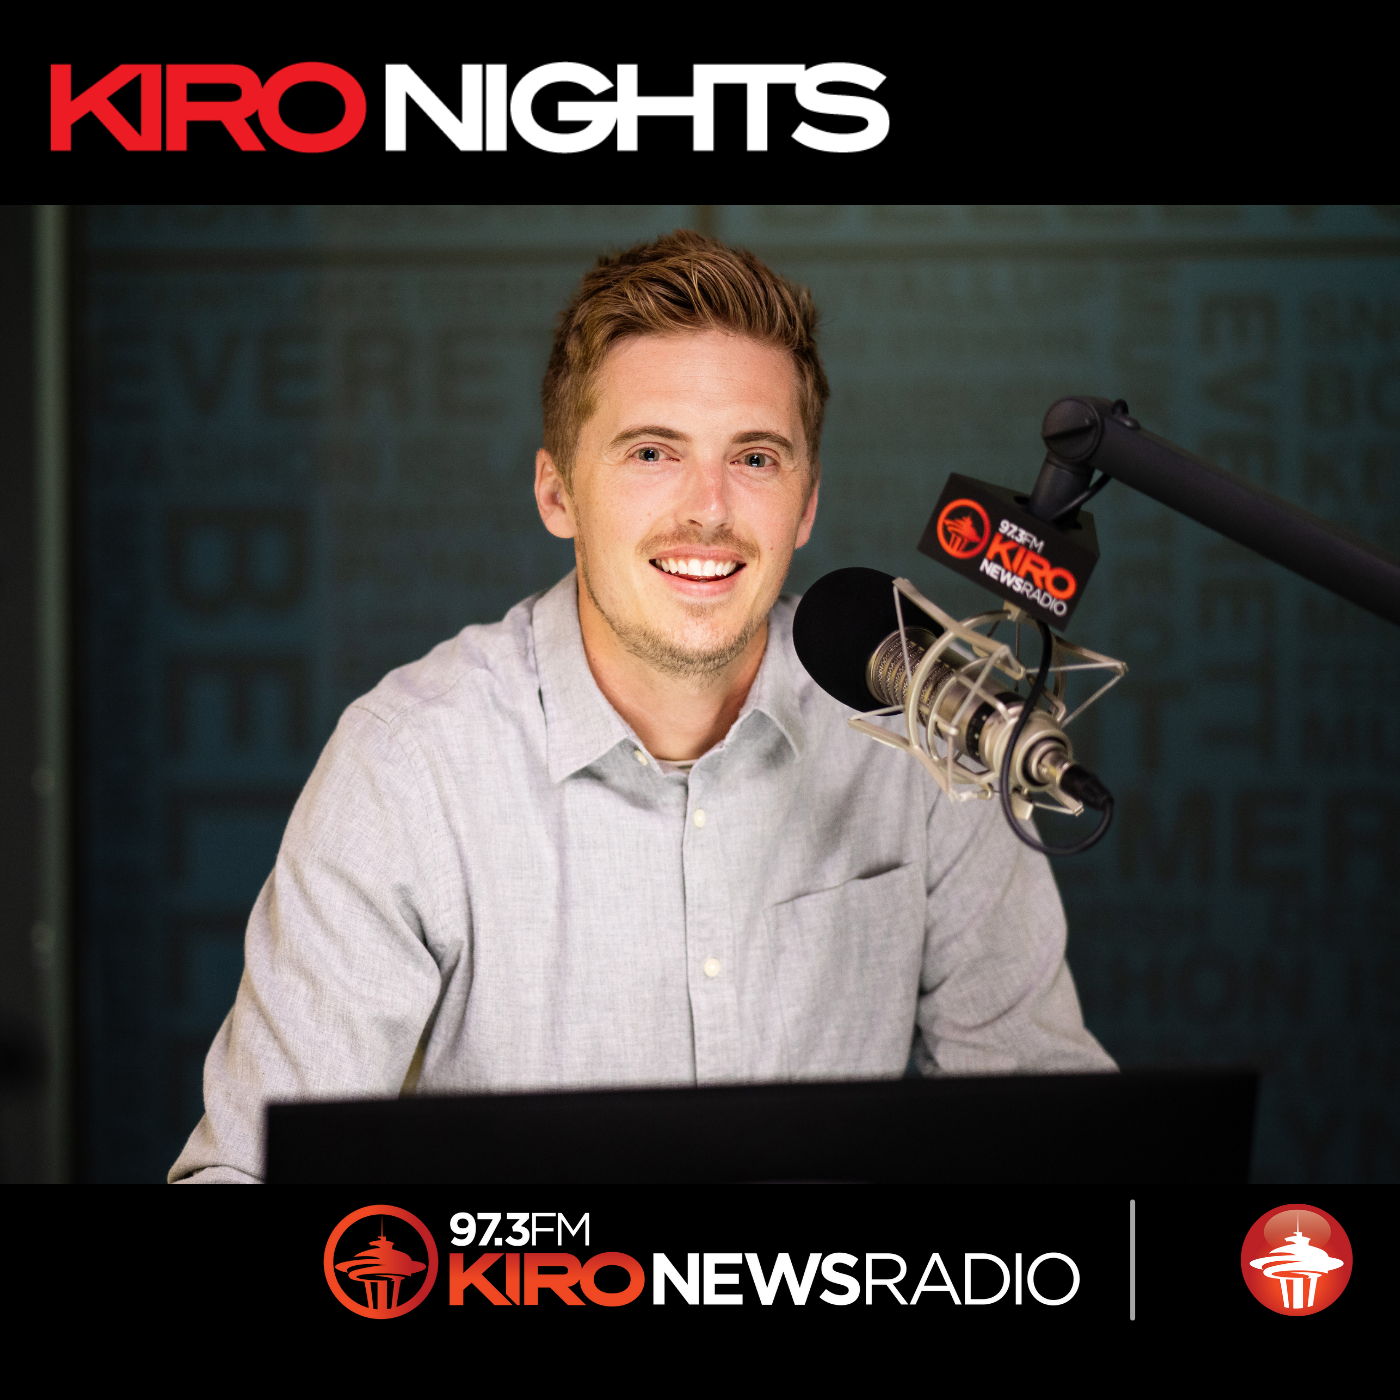 Highlights - KIRO Nights with Jake Skorheim show image